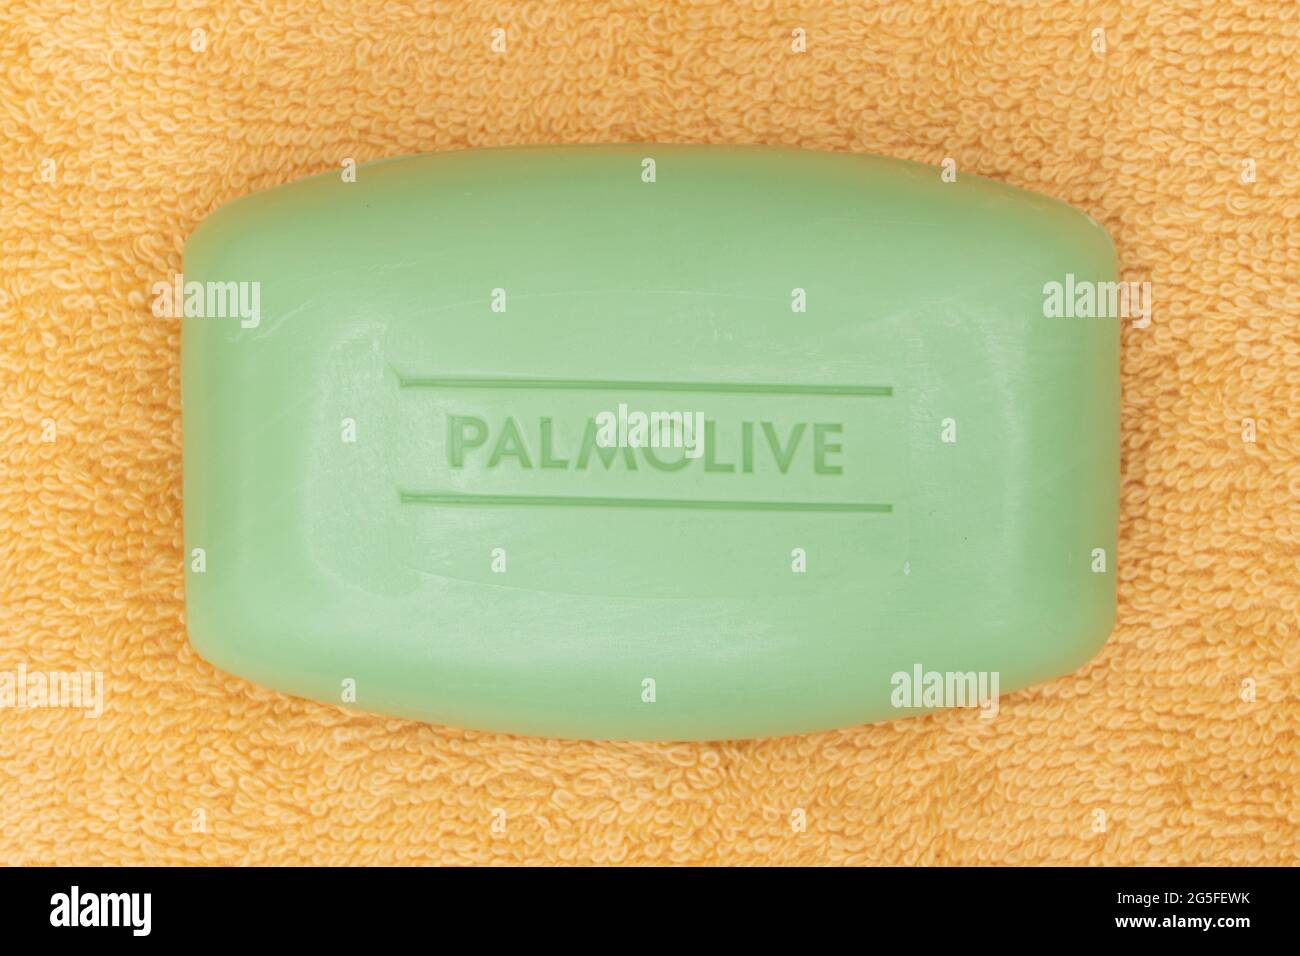 Ein Stück palmolive Seife auf einem Badetuch, Körperpflegeprodukt Stockfoto